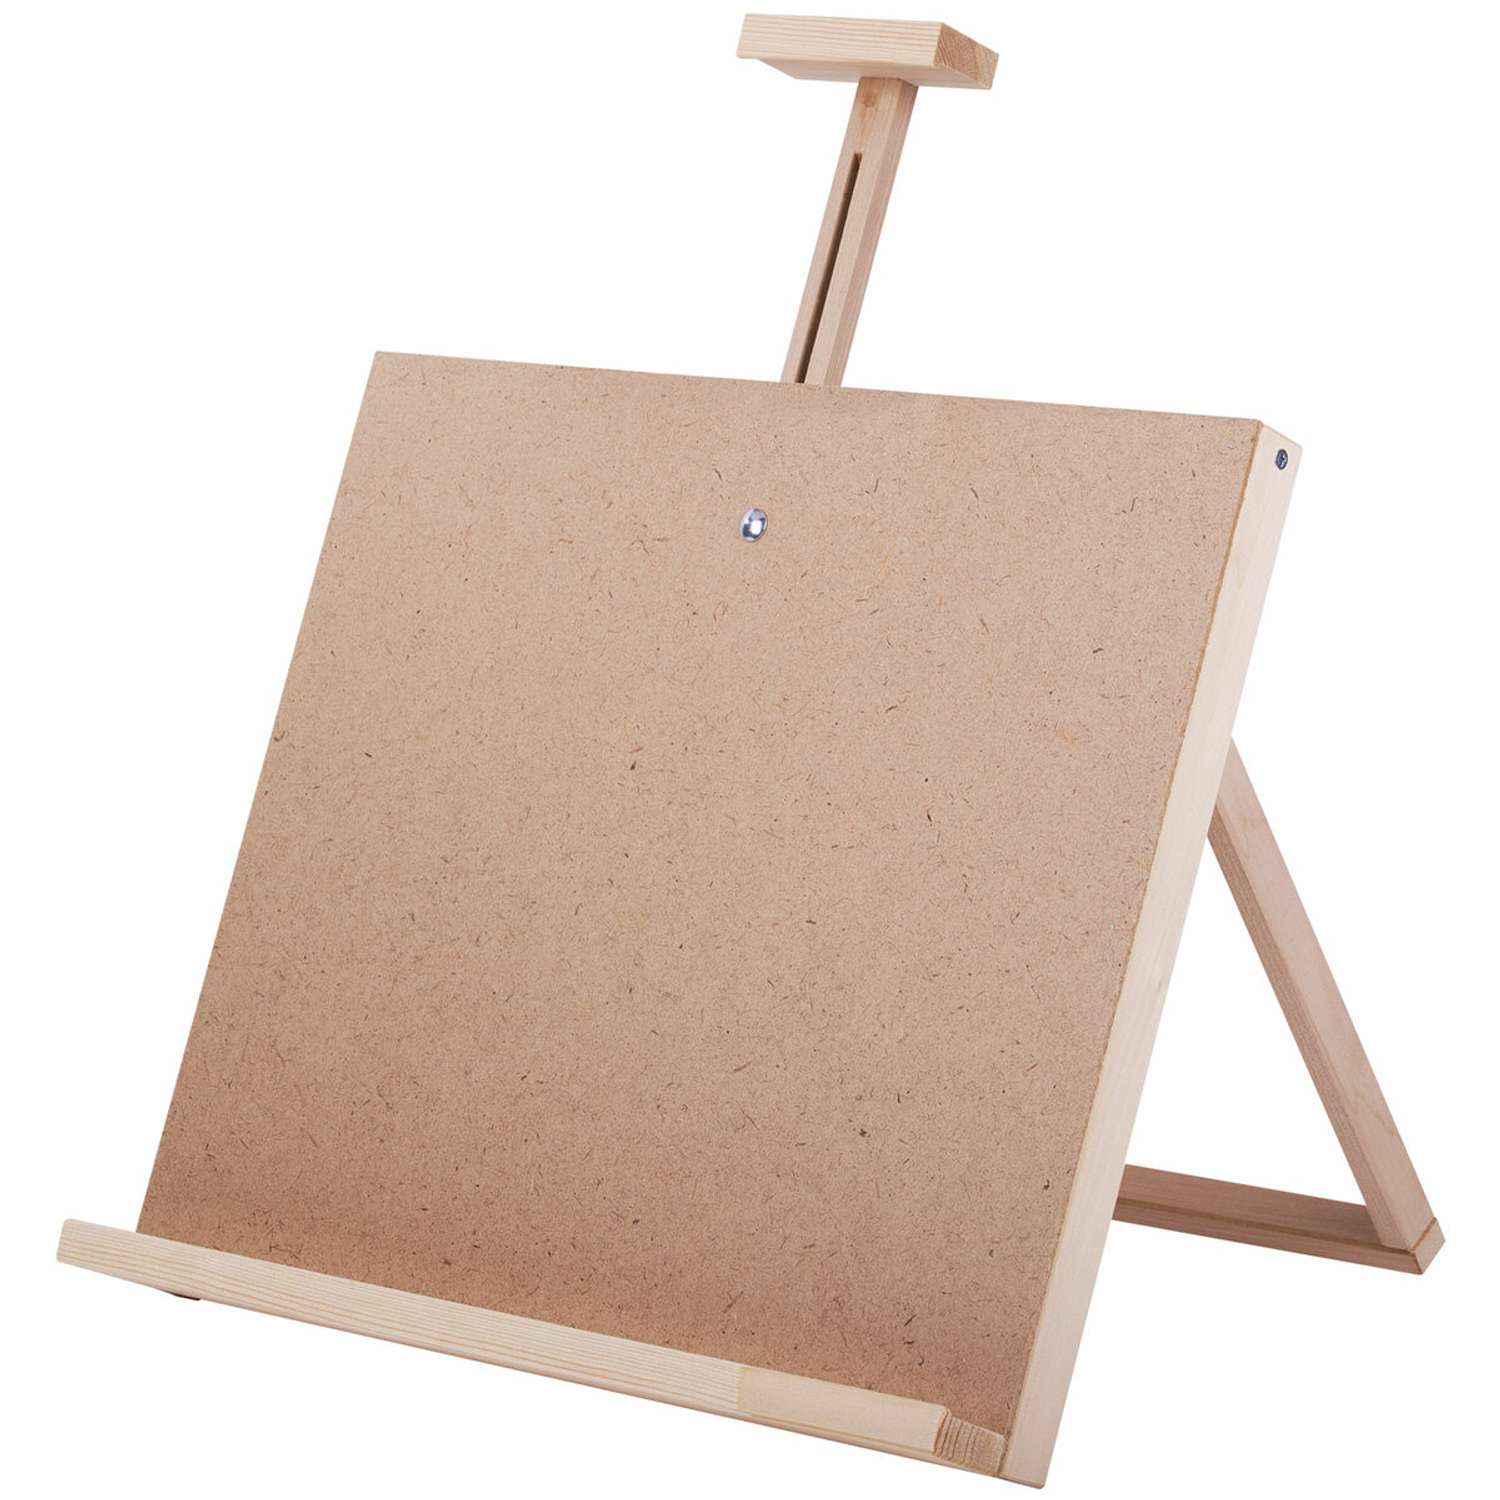 Мольберт-планшет Brauberg настольный из липы для рисования деревянный регулируемый верхний держатель - фото 2